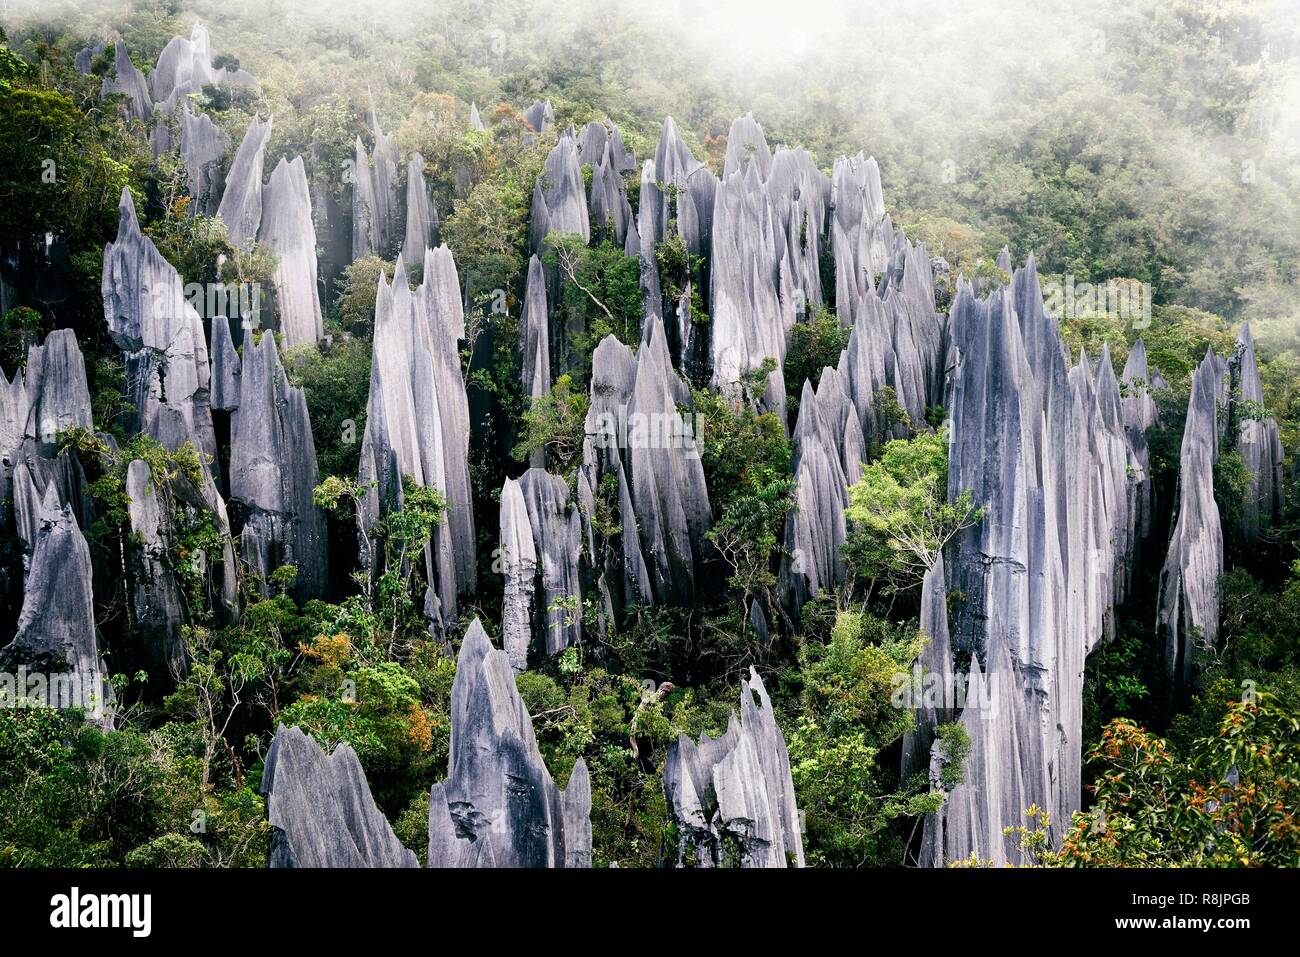 La Malesia, Borneo Sarawak, Parco Nazionale di Gunung Mulu elencati come patrimonio mondiale dall'UNESCO, i pinnacoli, una serie di alta 45 metri nitidissime picchi di calcare che la torre al di sopra della vegetazione circostante, visto da un punto di vista durante i famosi Pinnacoli trek Foto Stock